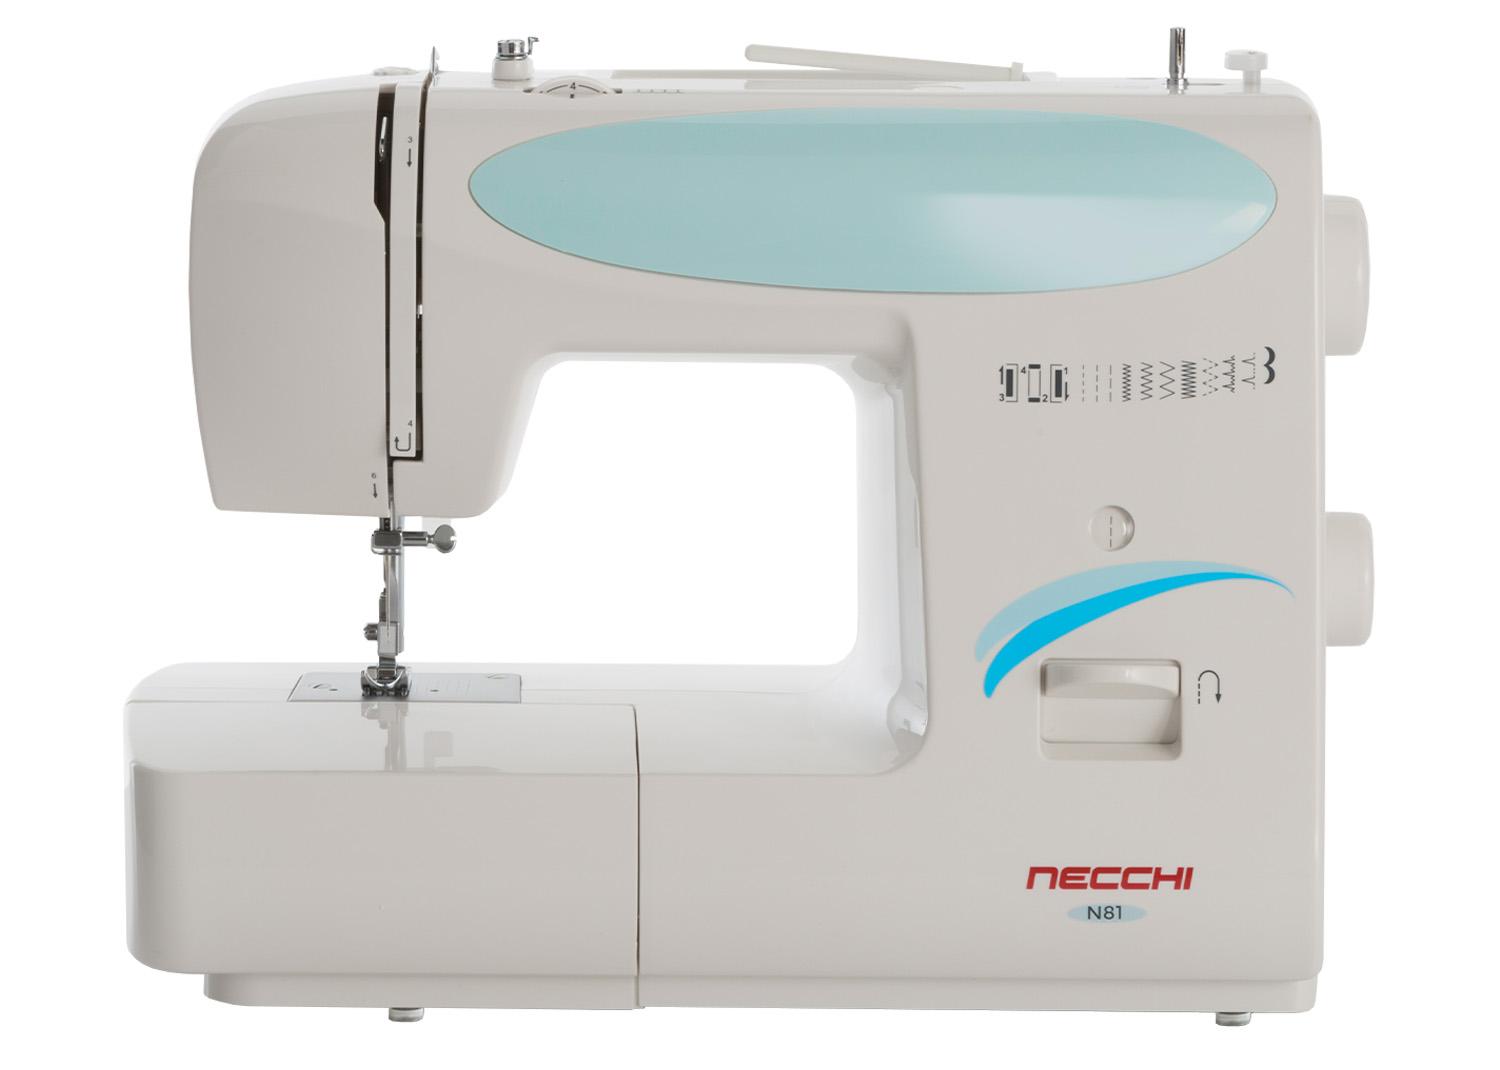 Macchine per cucire - Necchi N81 - Necchi Shop Online